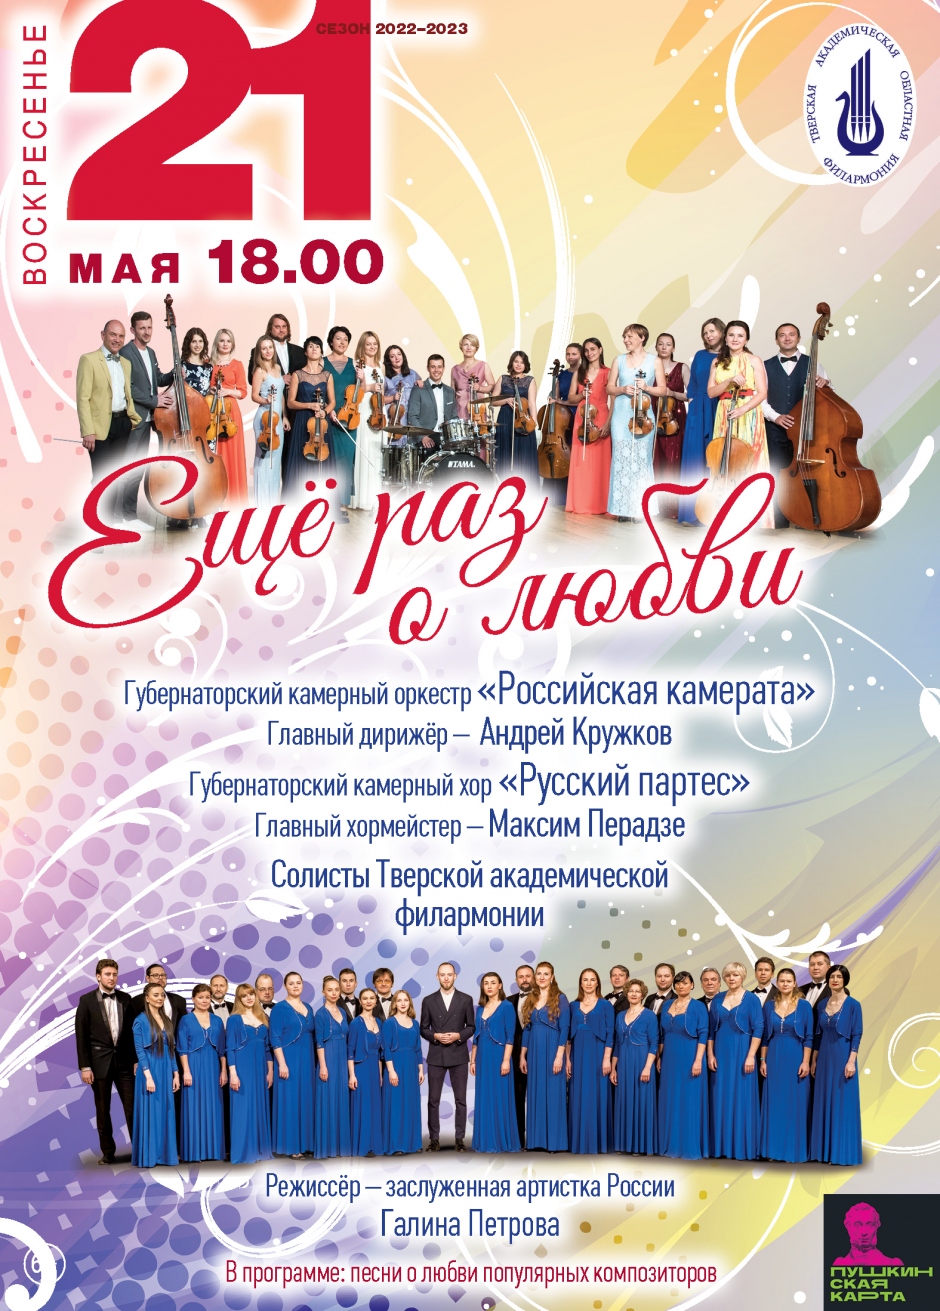 Популярные песни о любви прозвучат 21 мая в Тверской академической филармонии